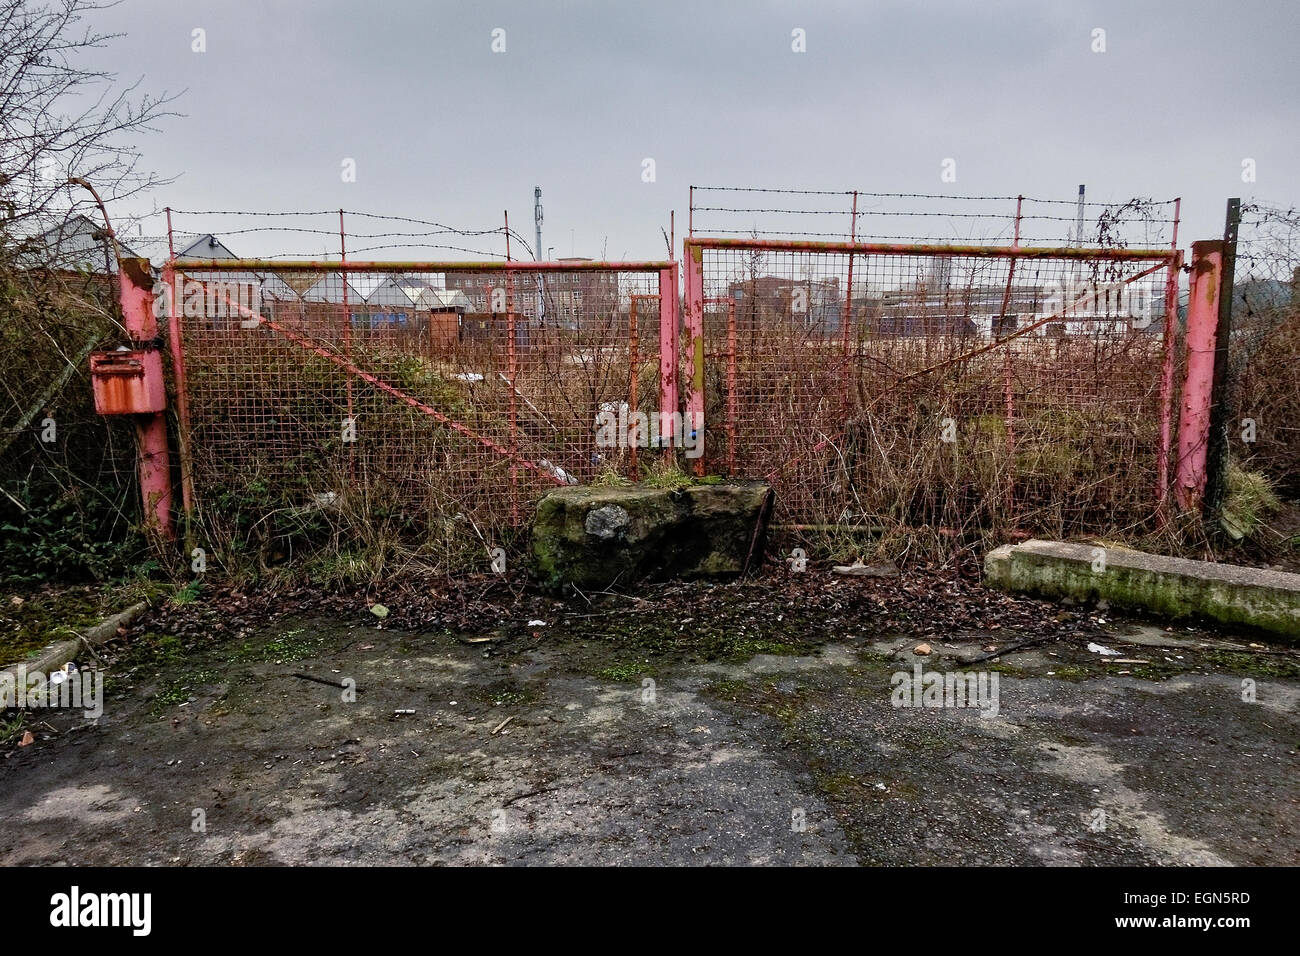 Sovradimensionate gate temporaneo all'entrata abbandonati sito industriale. Foto Stock